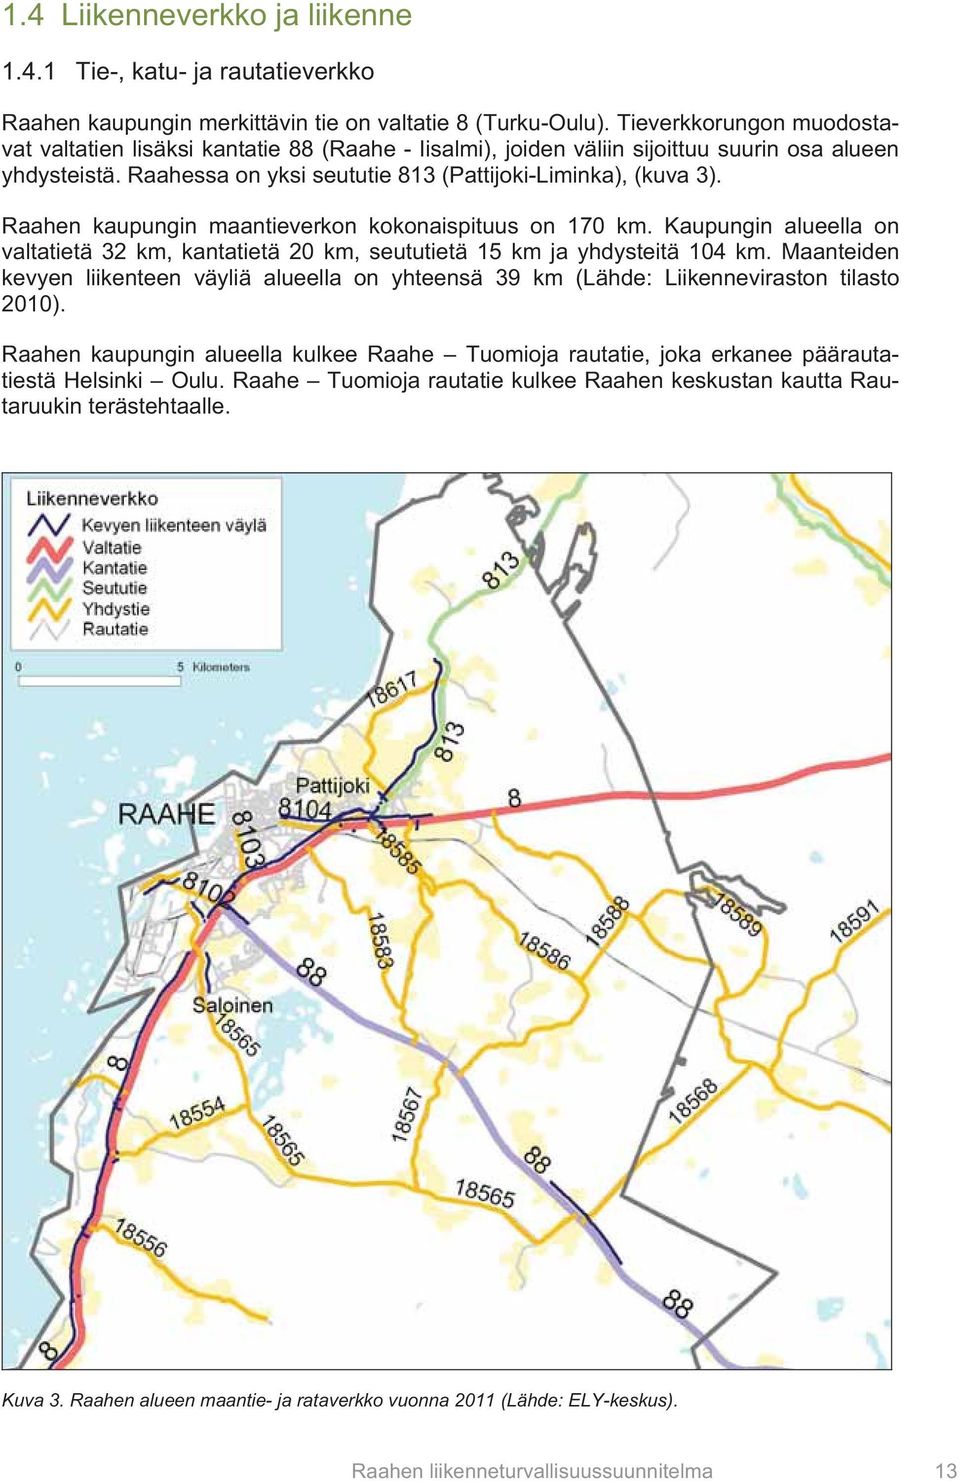 Raahen kaupungin maantieverkon kokonaispituus on 170 km. Kaupungin alueella on valtatietä 32 km, kantatietä 20 km, seututietä 15 km ja yhdysteitä 104 km.